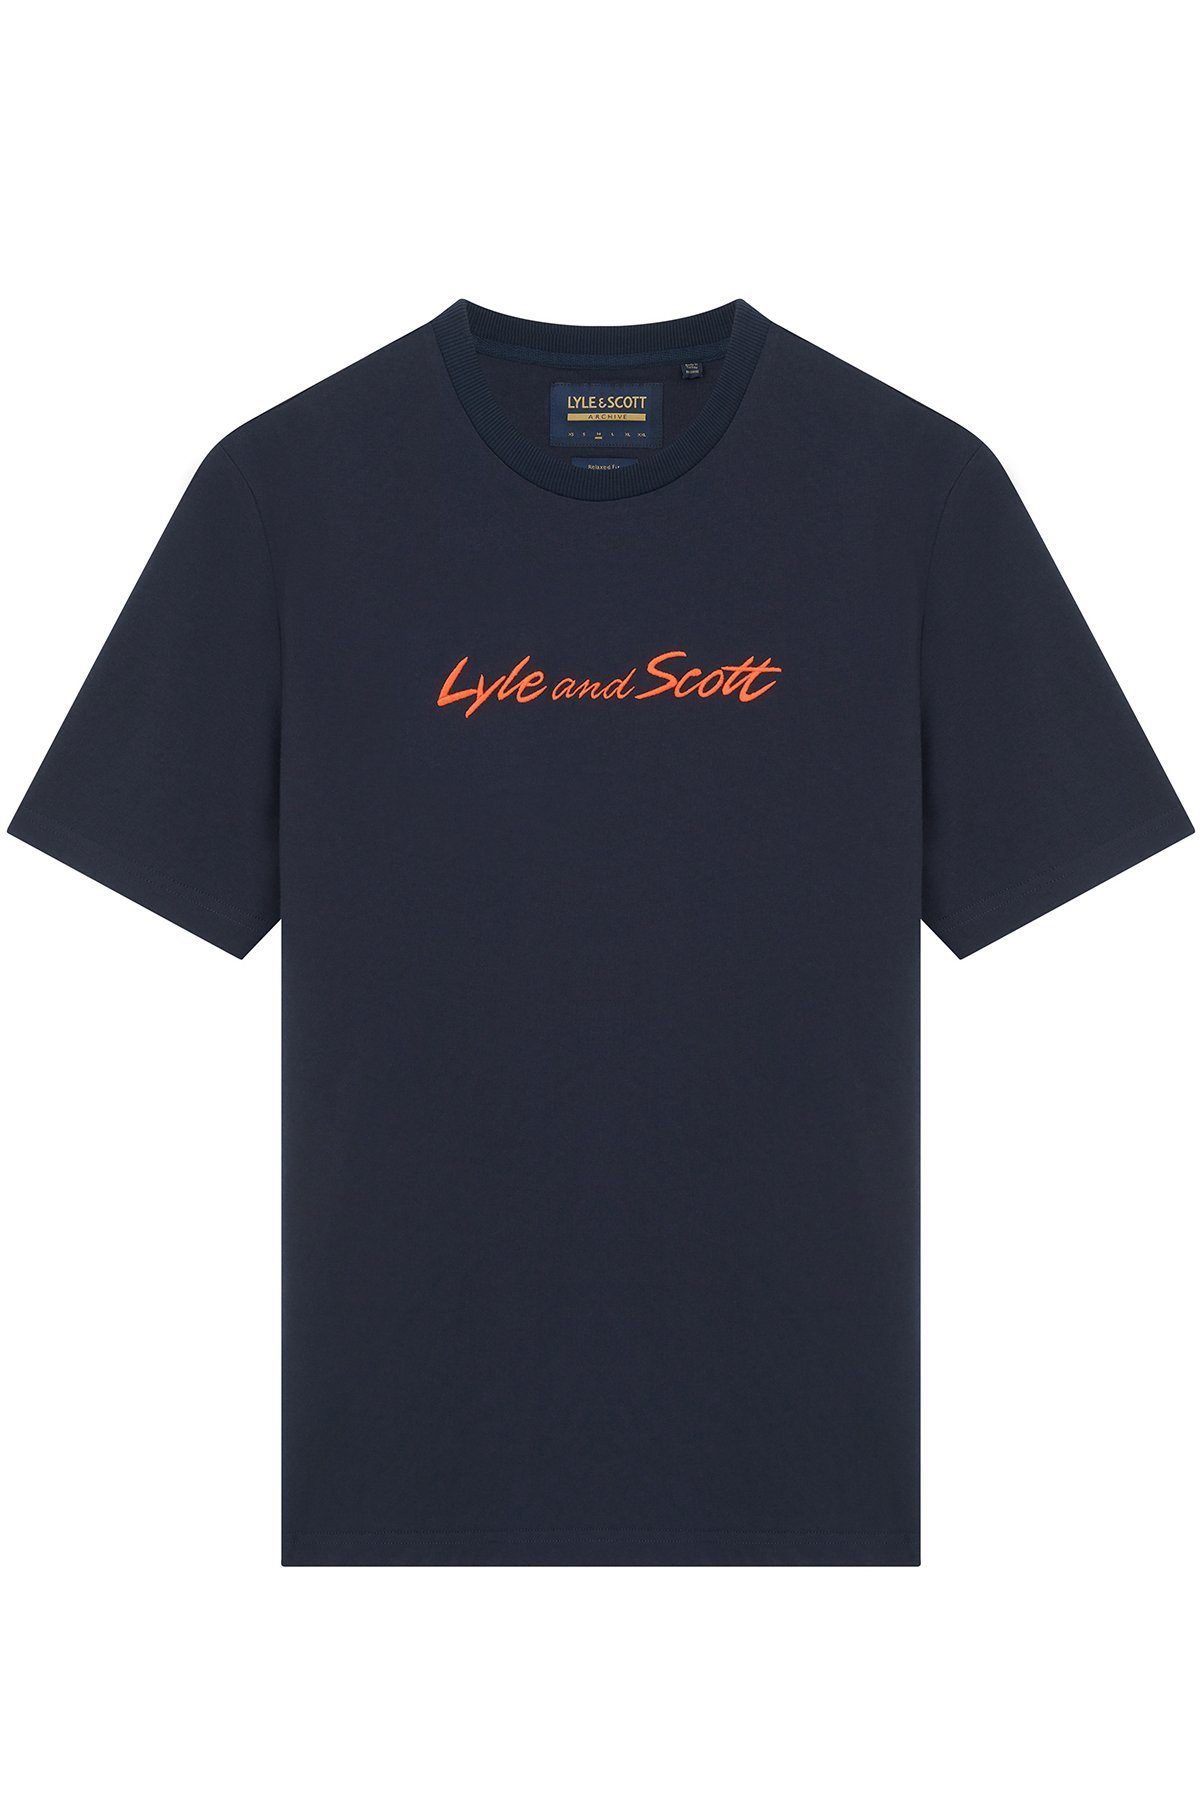 & Lyle T-Shirt Orange Brustprint Dunkelmarine/Sorrel Mit Scott